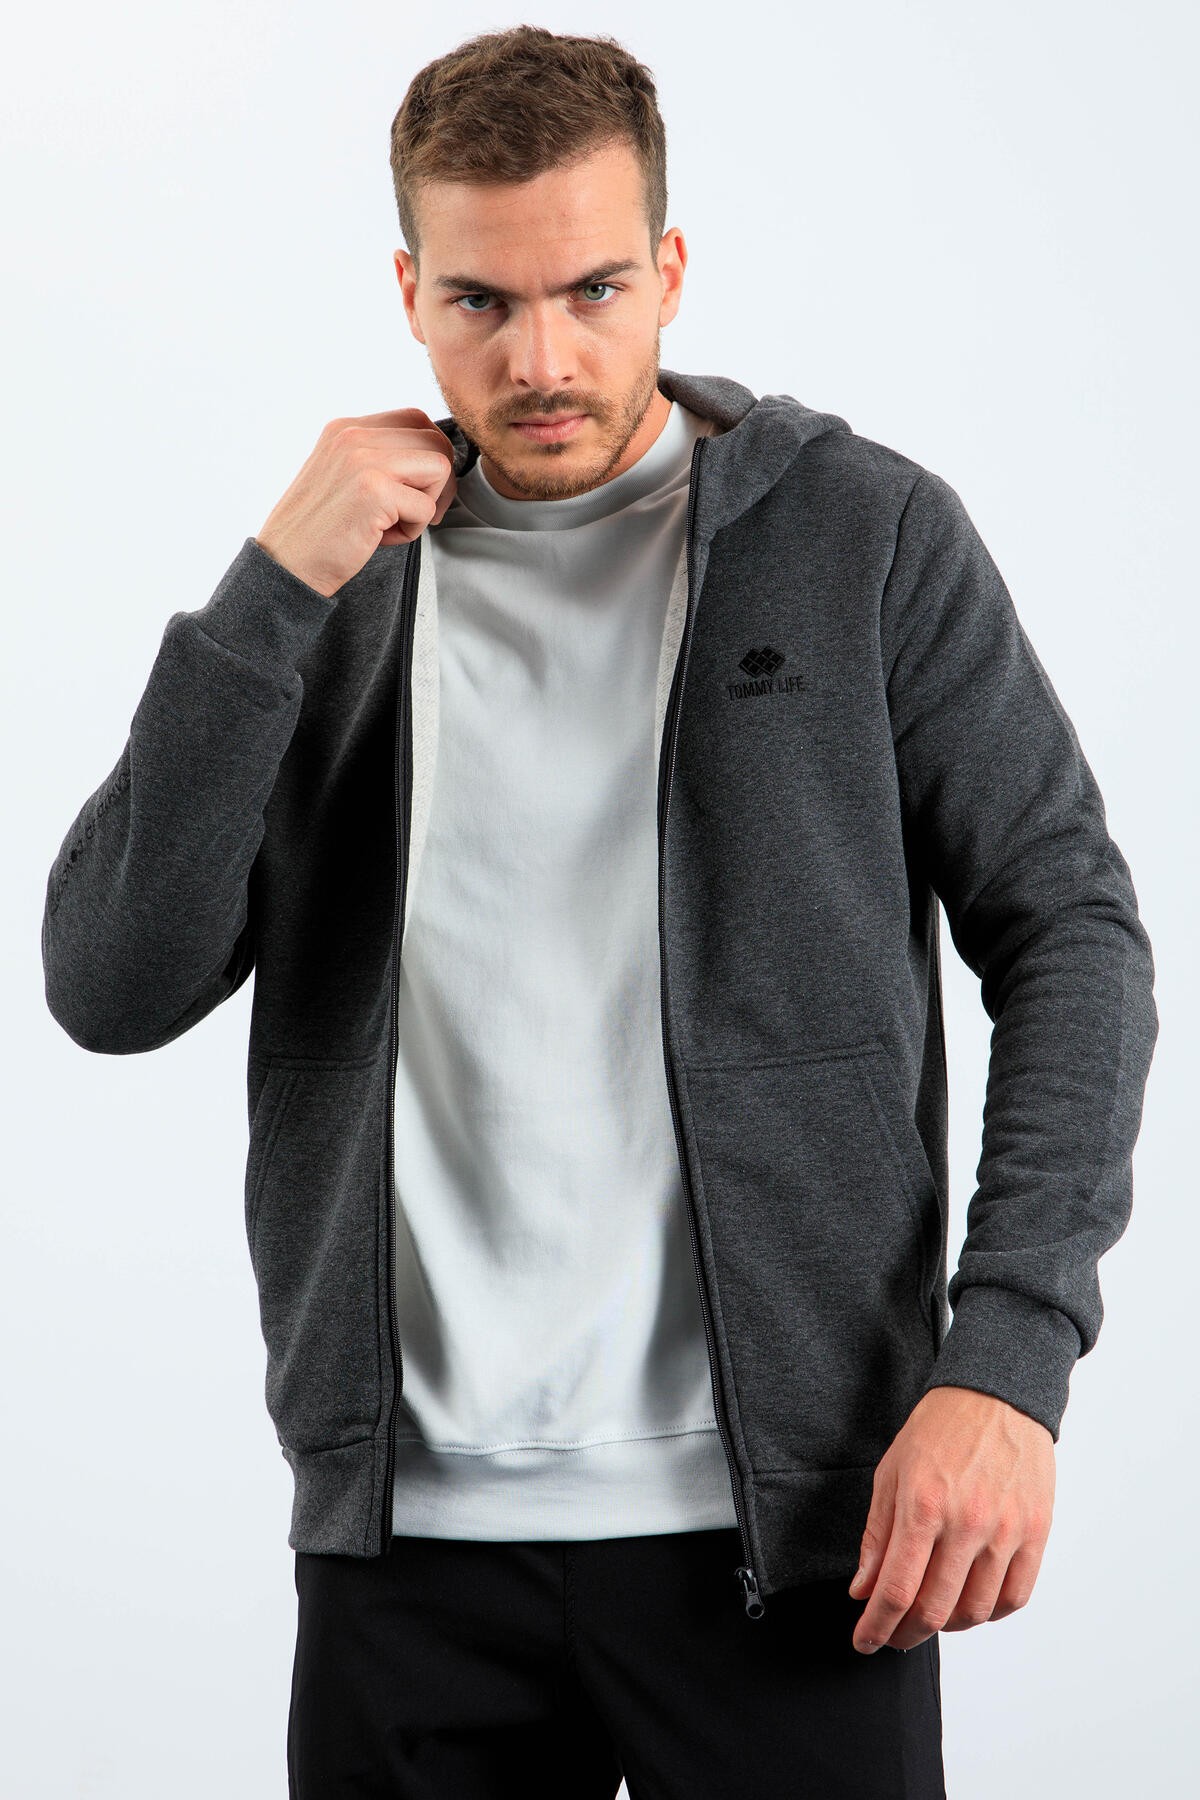 Antrasit Melanj Basic Kapüşonlu Rahat Form Nakış Detaylı Fermuarlı Erkek Sweatshirt - 88035